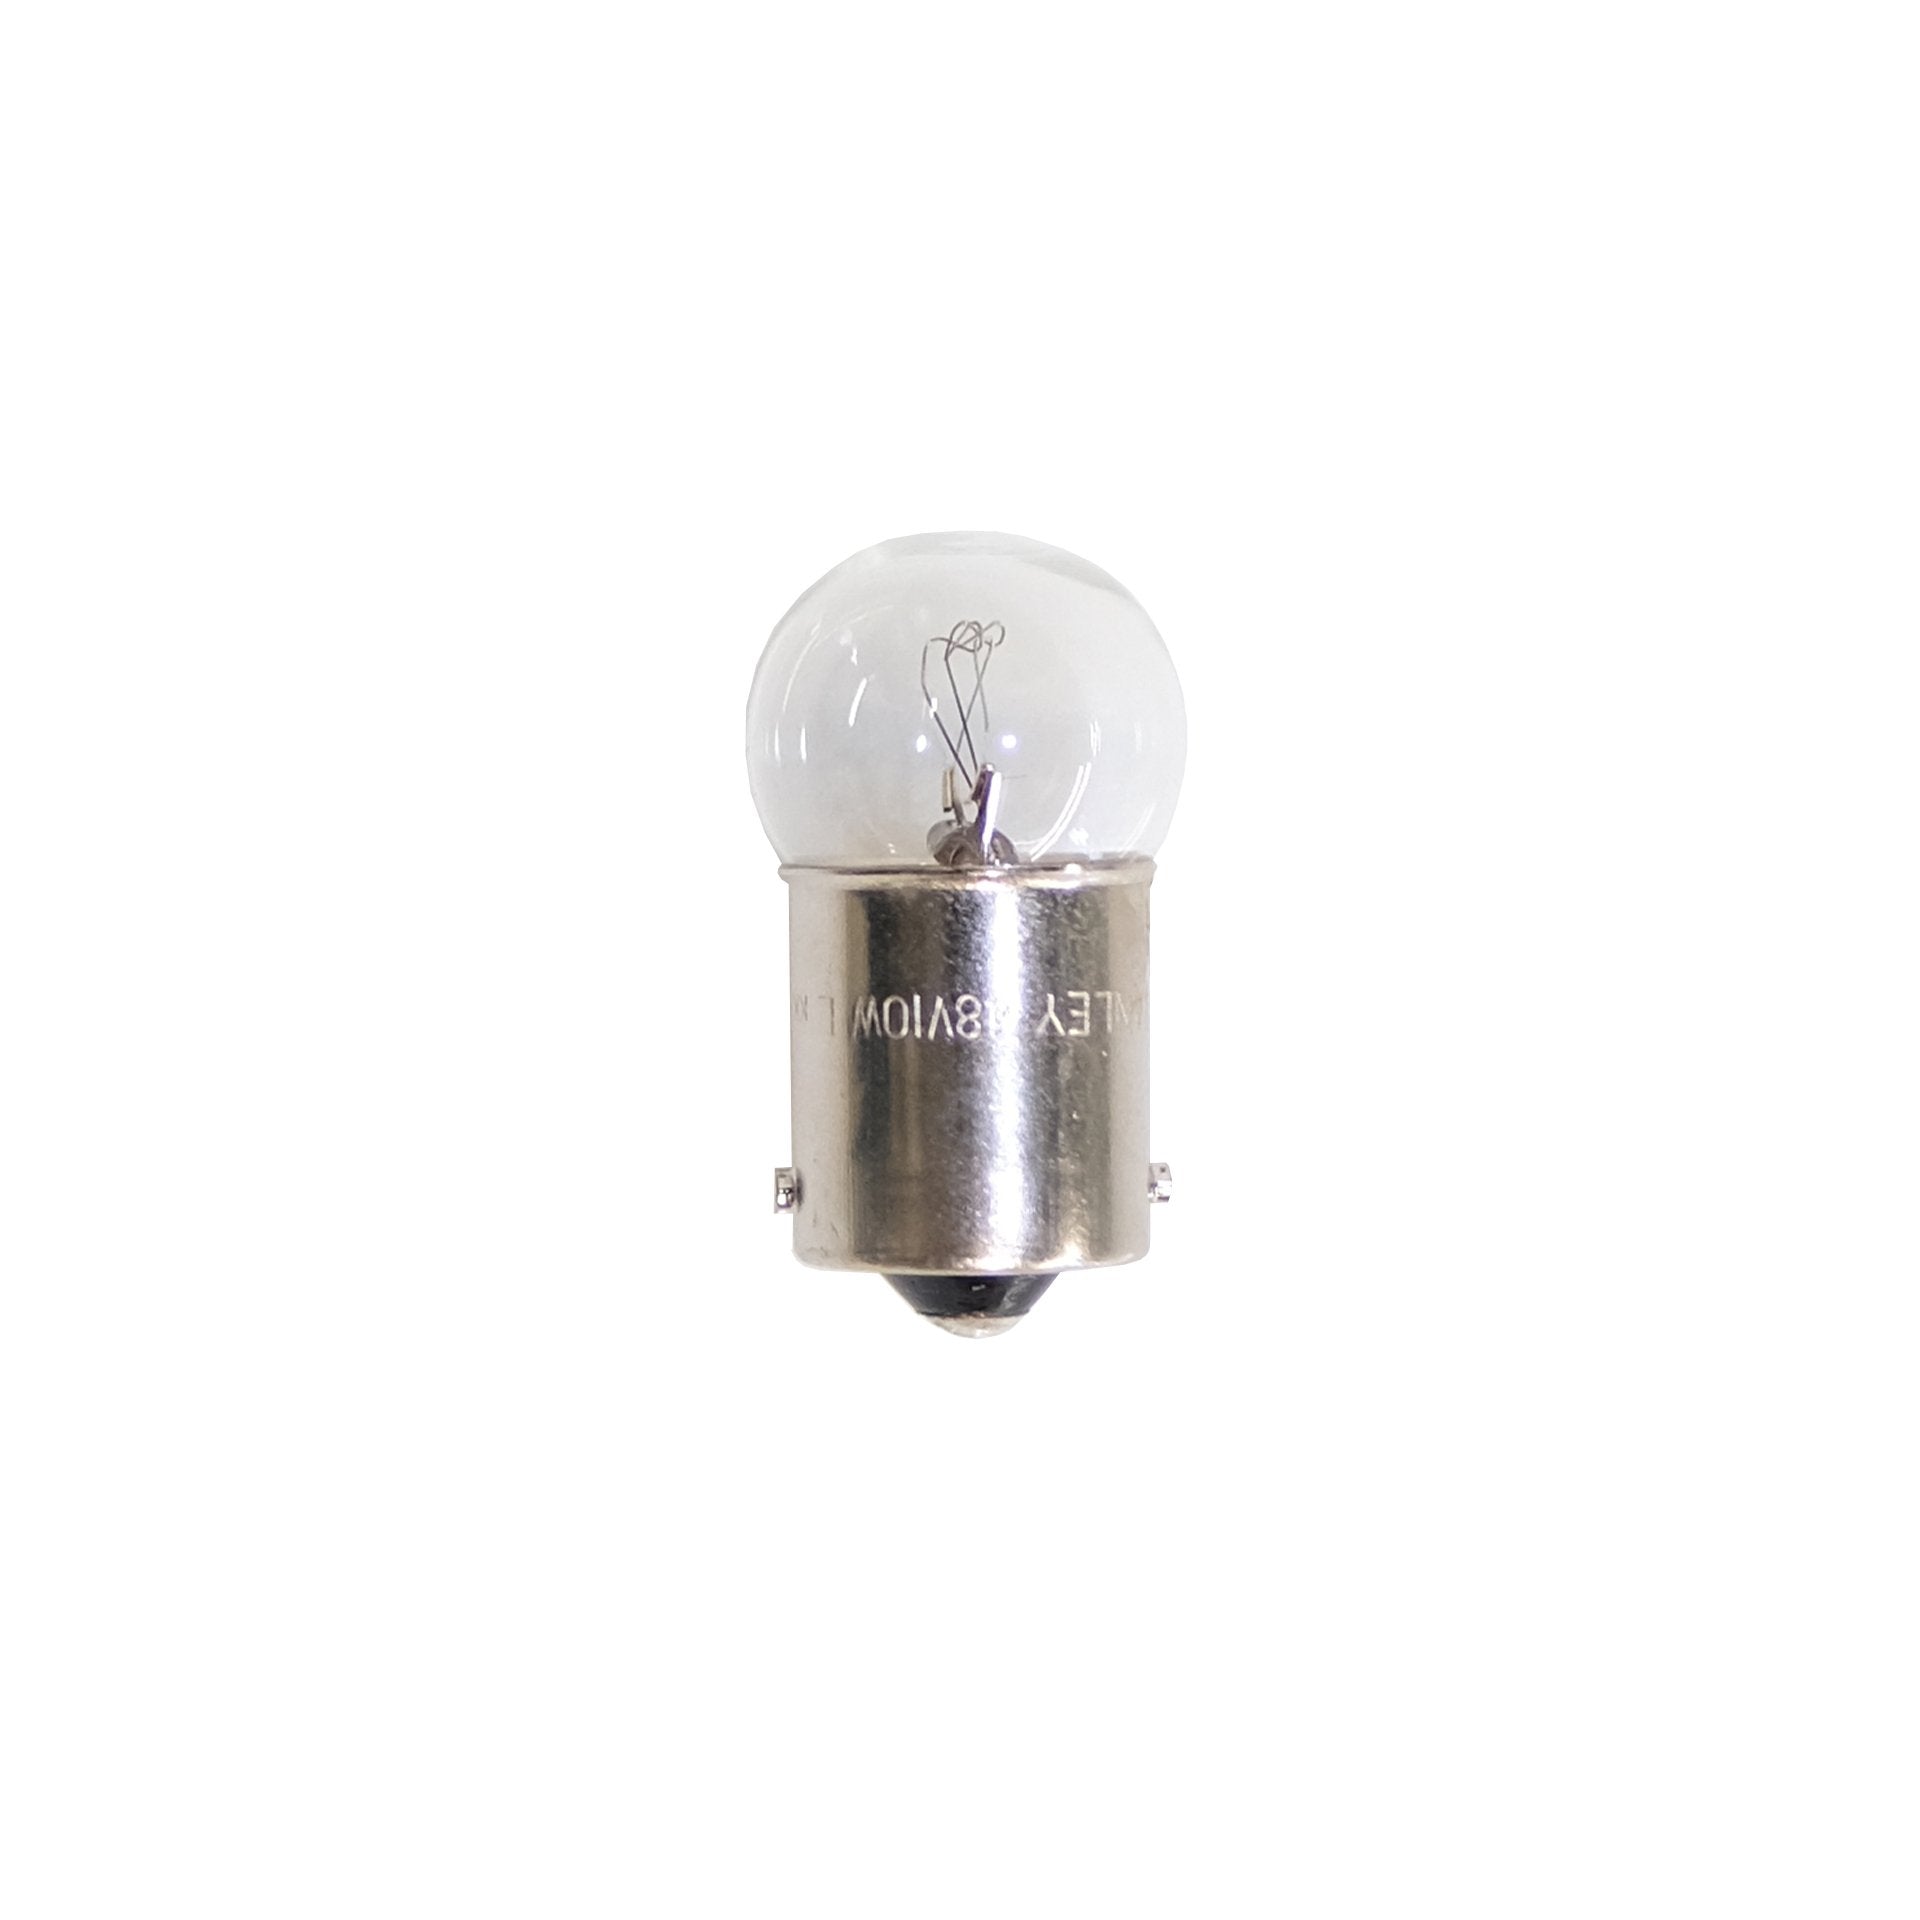 48 Volt 10 Watt Bulb SKU: 26273-3K400